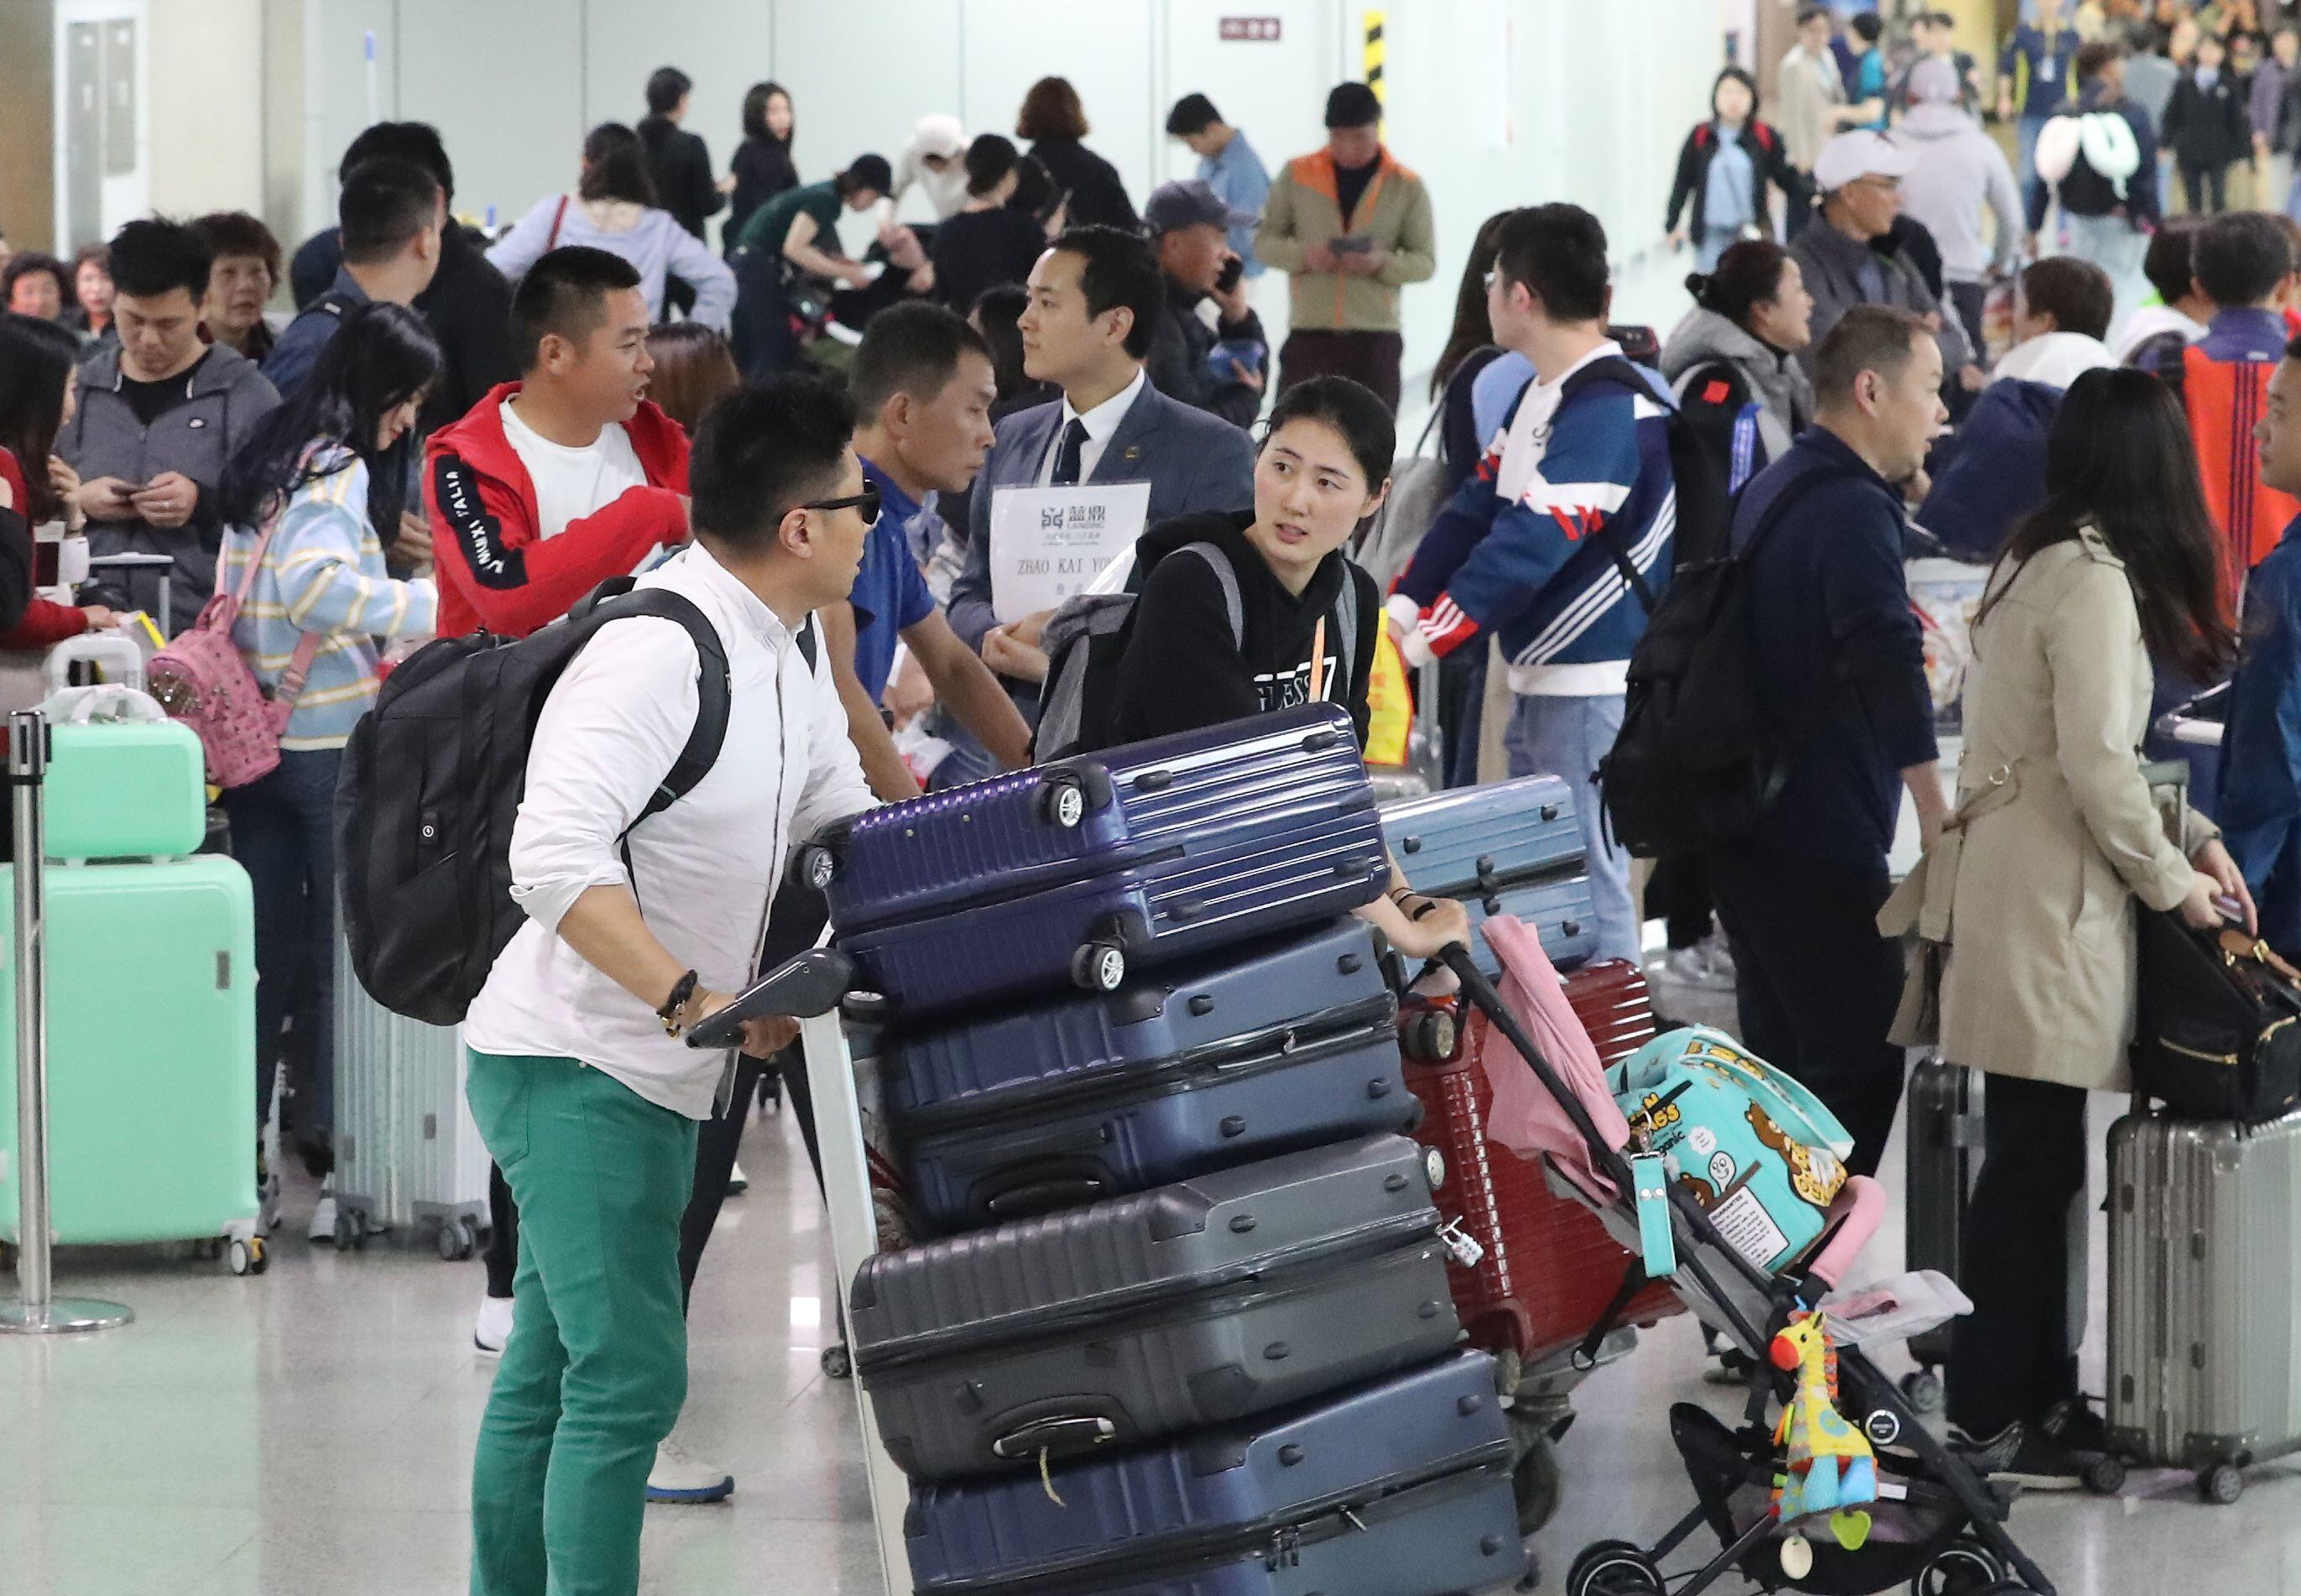 지난 2019년 중국 노동절 연휴(5월 1~5일)를 앞두고 제주 국제공항을 찾은 중국인 관광객들의 모습./뉴스1 